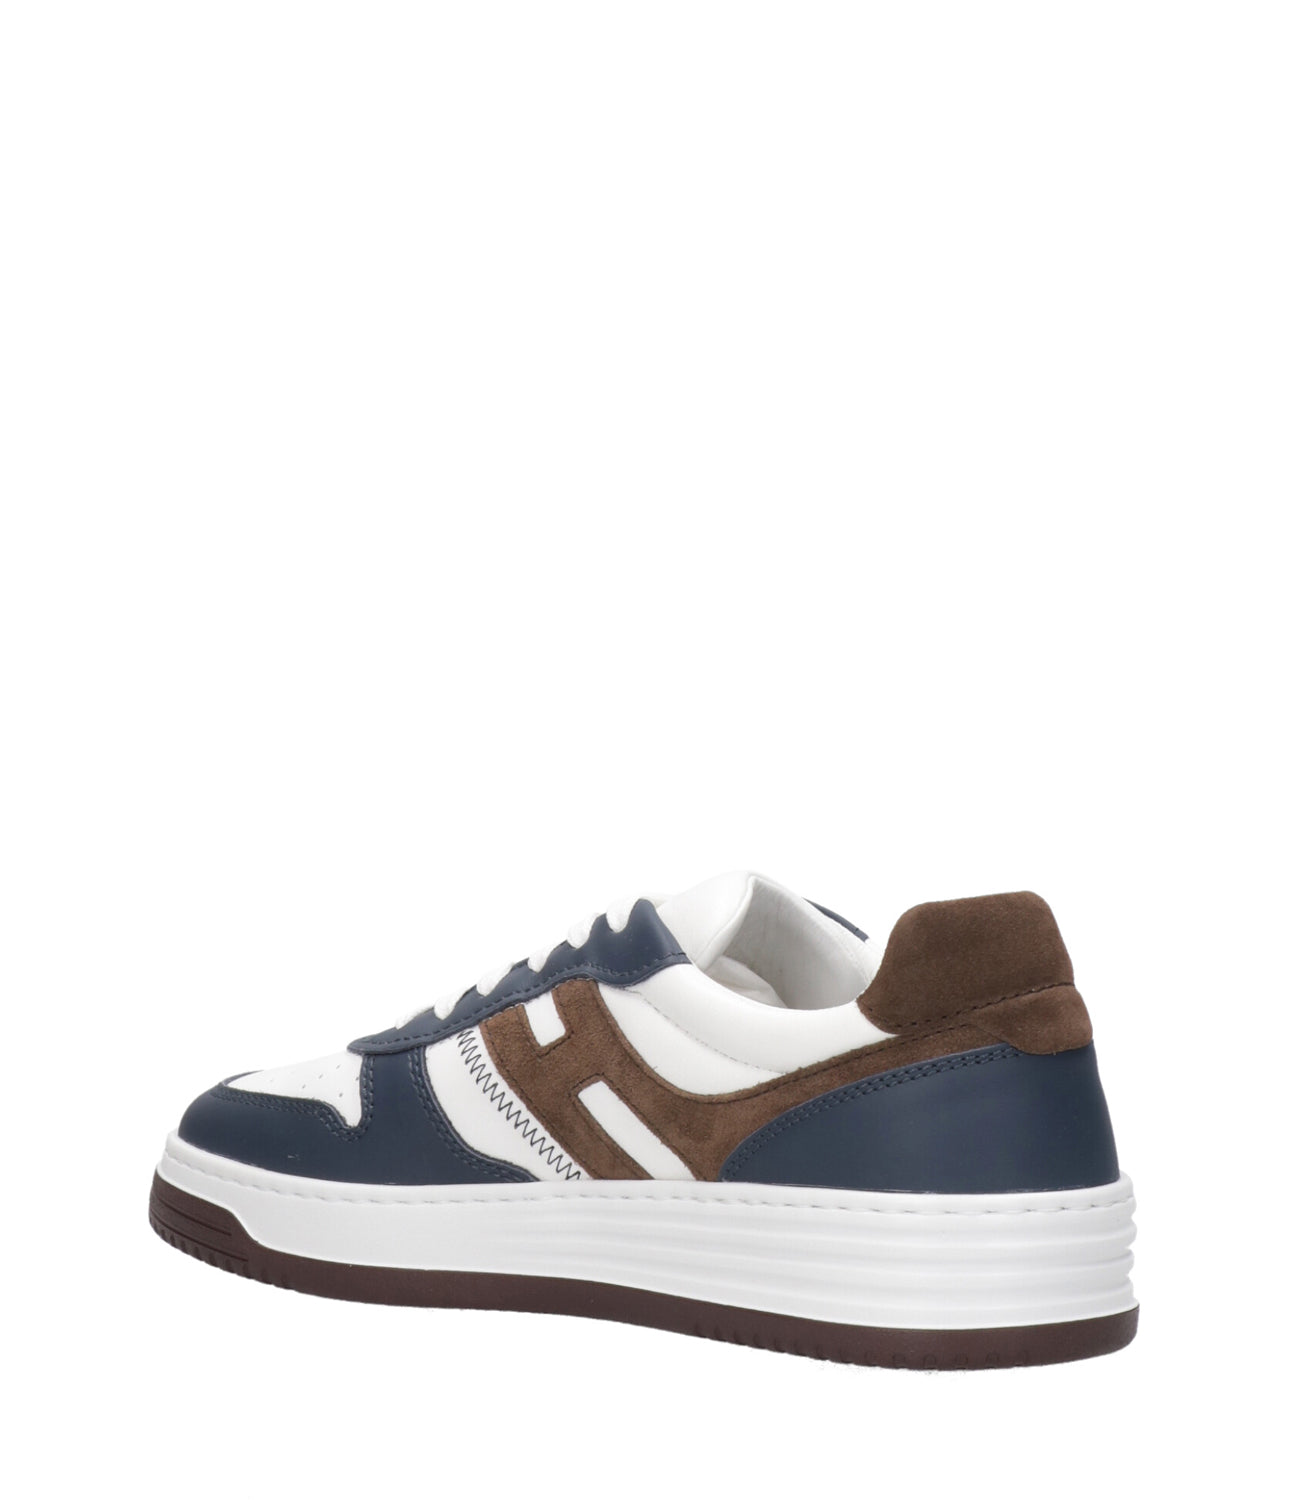 Hogan | Sneakers H60 Allacciato Bianco, Blu e Marrone